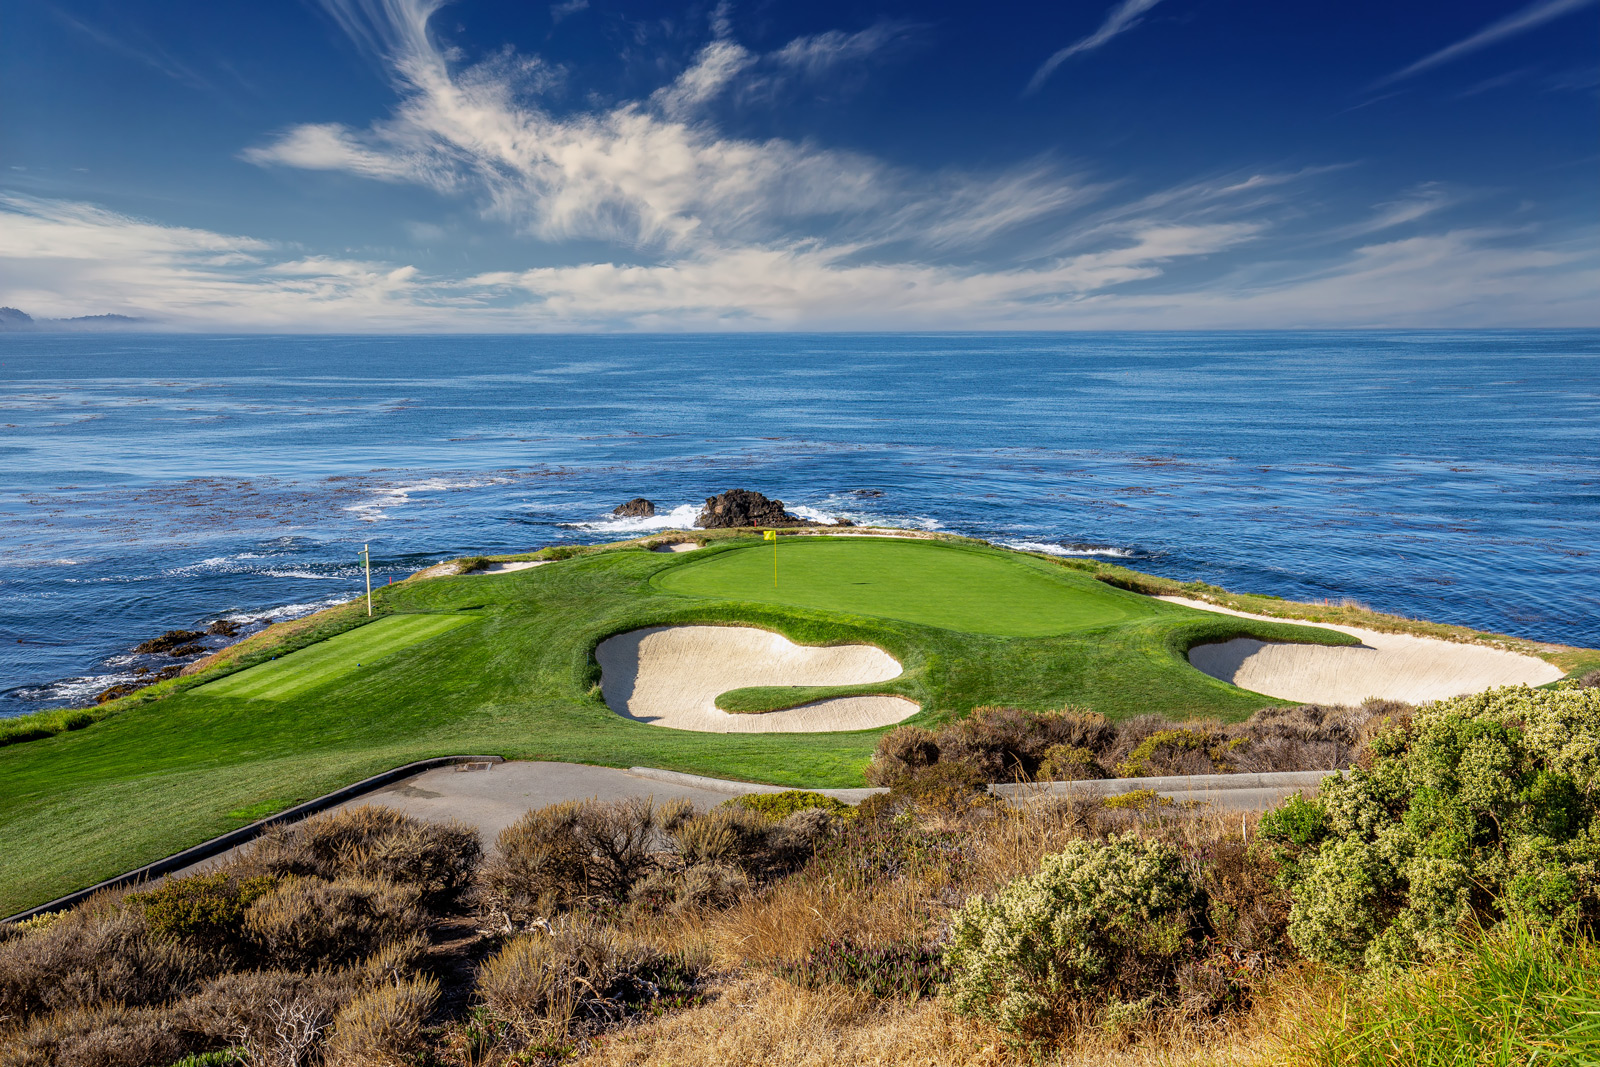 Pebble Beach Golf Course - Most Prestigious Golf Courses in America